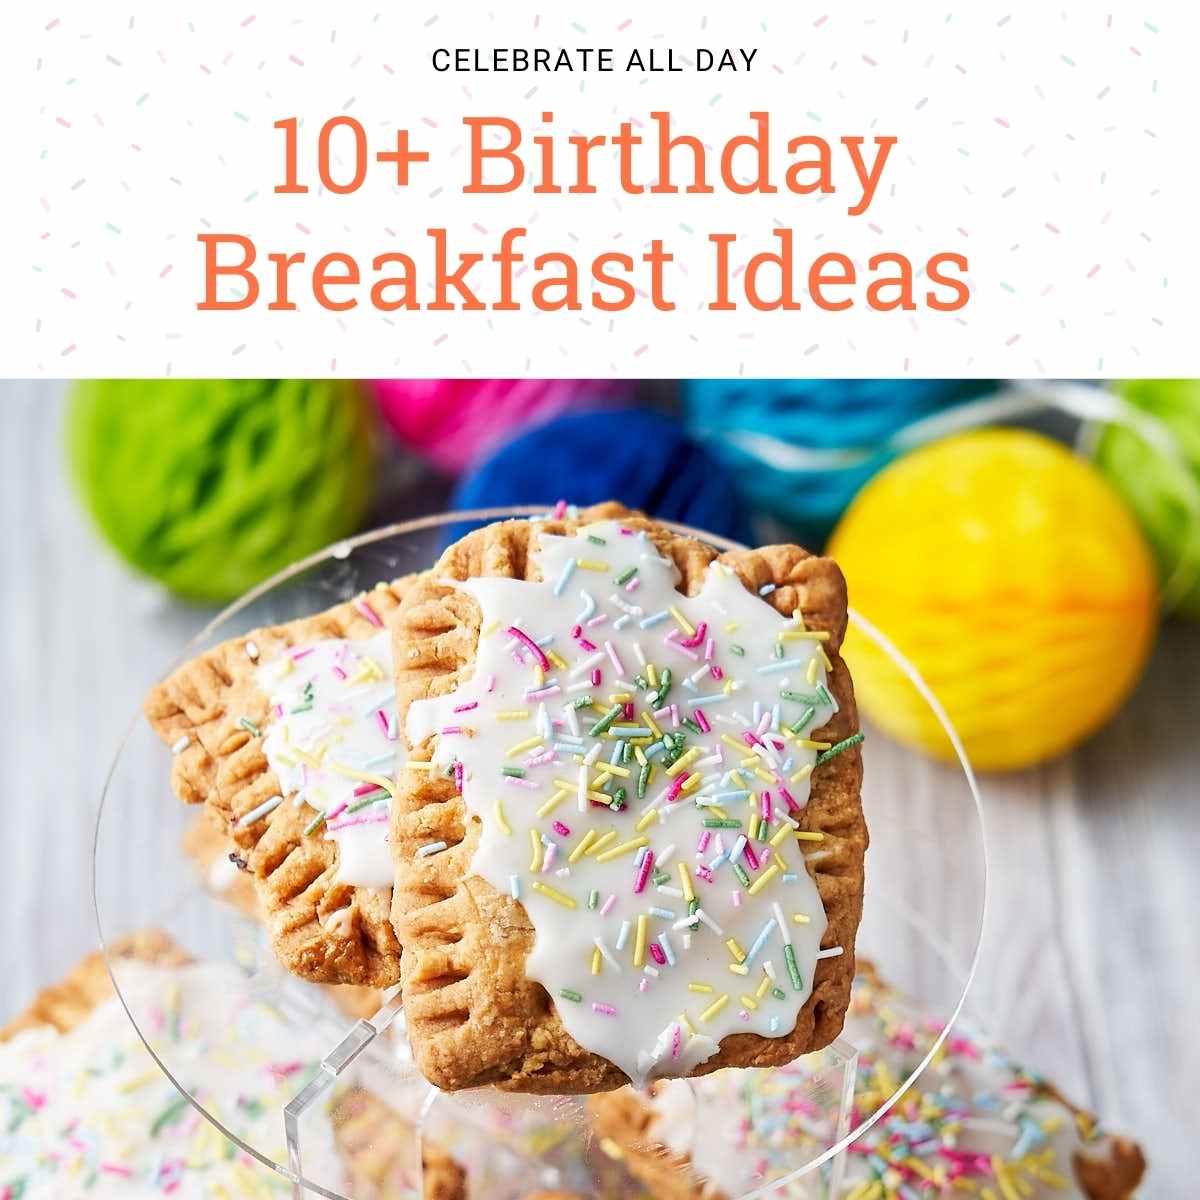 Birthday Breakfast Ideas - Popular Recipes